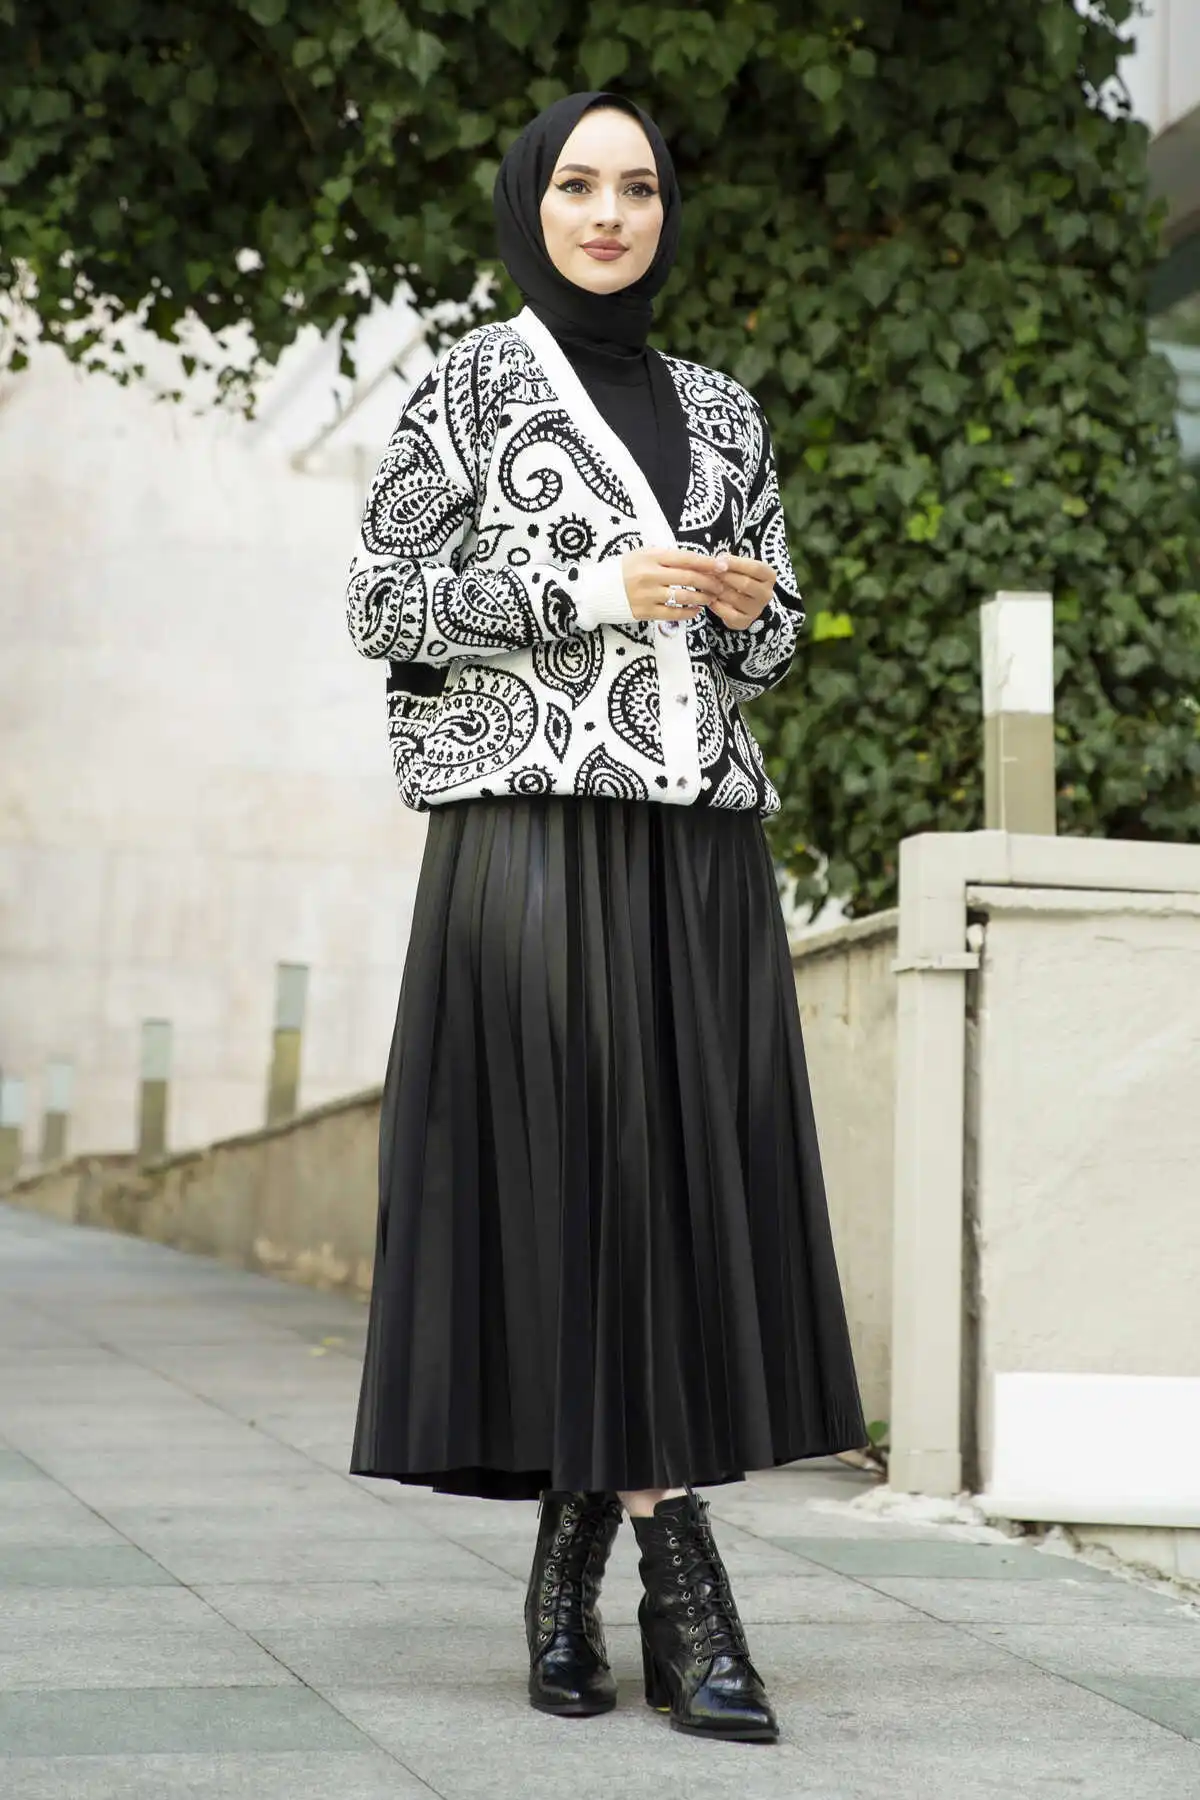 Snail Pattern Hijab Cardigan Black Winter Autumn 2021 Muslim Women Hijab headscarf Islamic Turkey